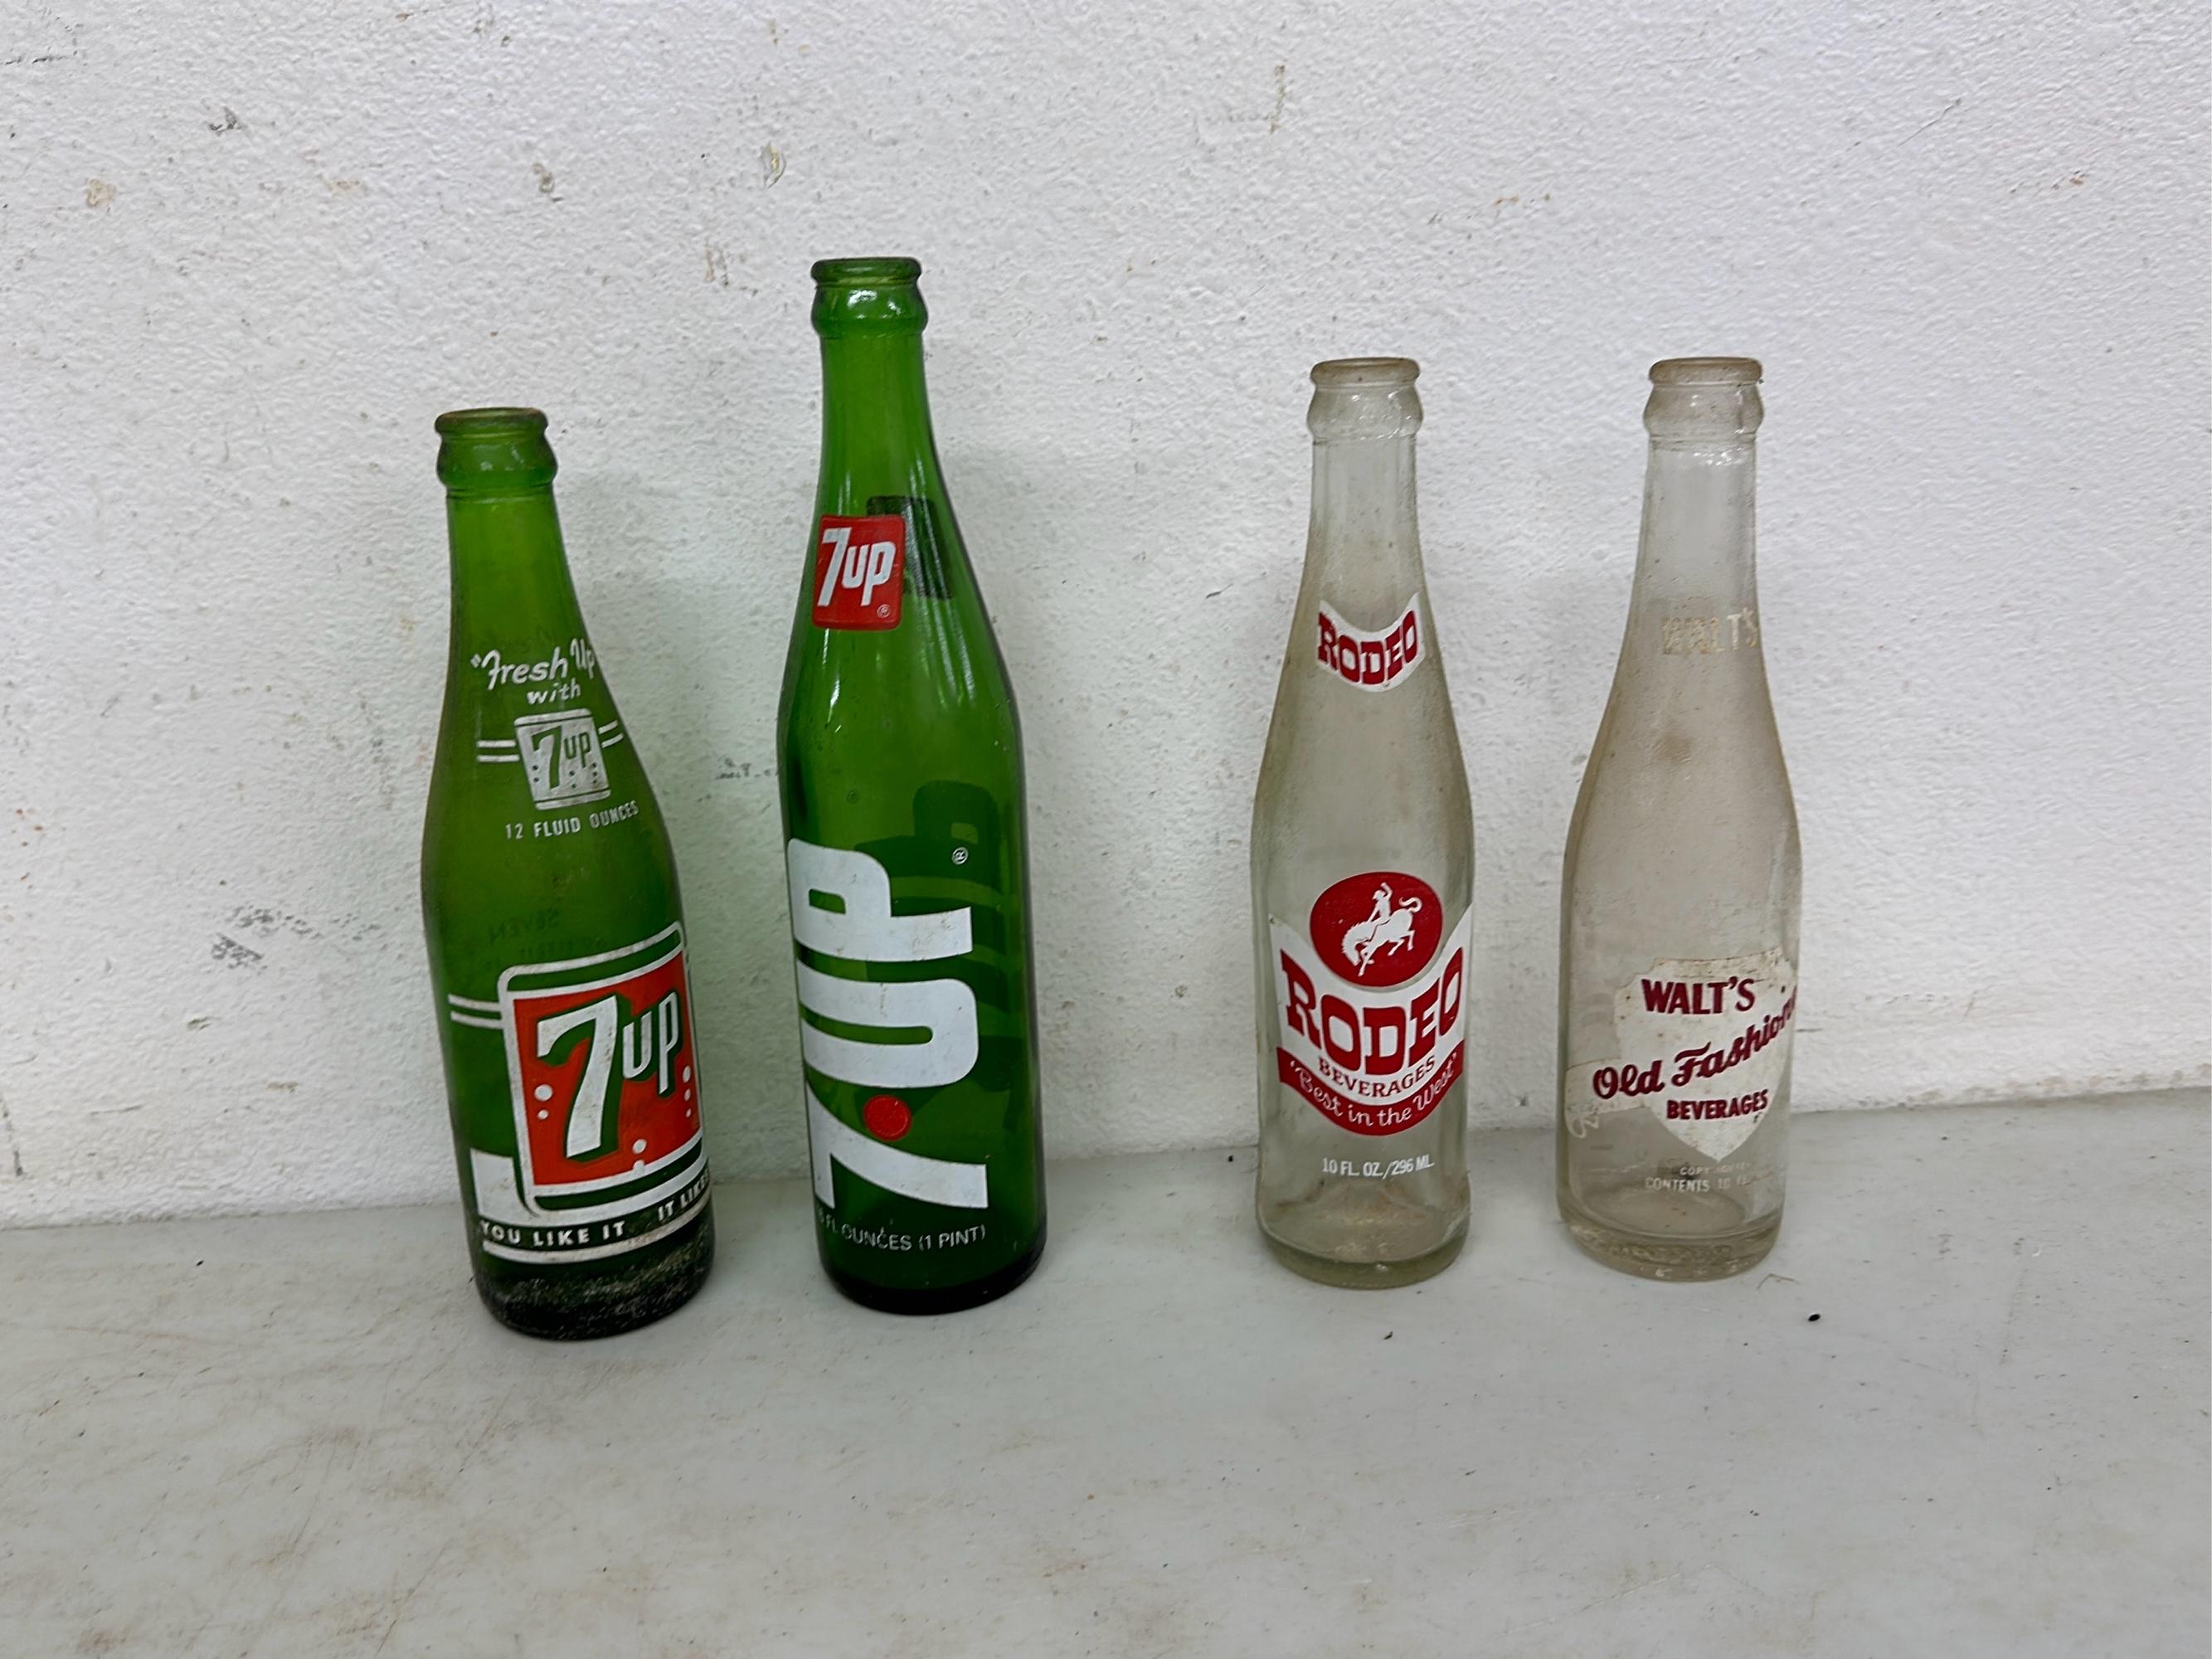 Coca-Cola Collectibles & Collectible Soda Bottles